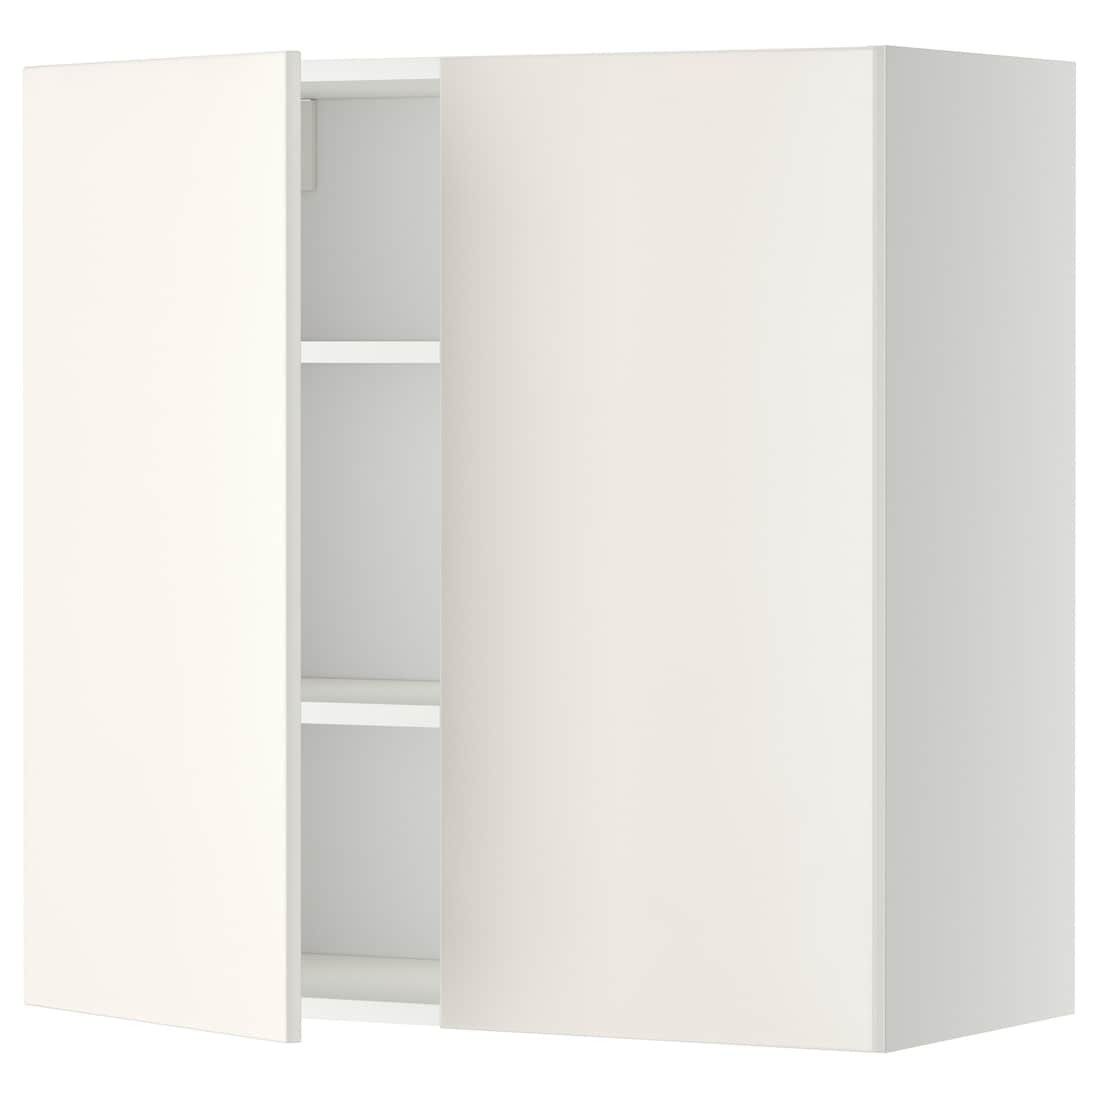 IKEA METOD МЕТОД Навісна шафа з полицями / 2 дверцят, білий / Veddinge білий, 80x80 см 39457606 394.576.06